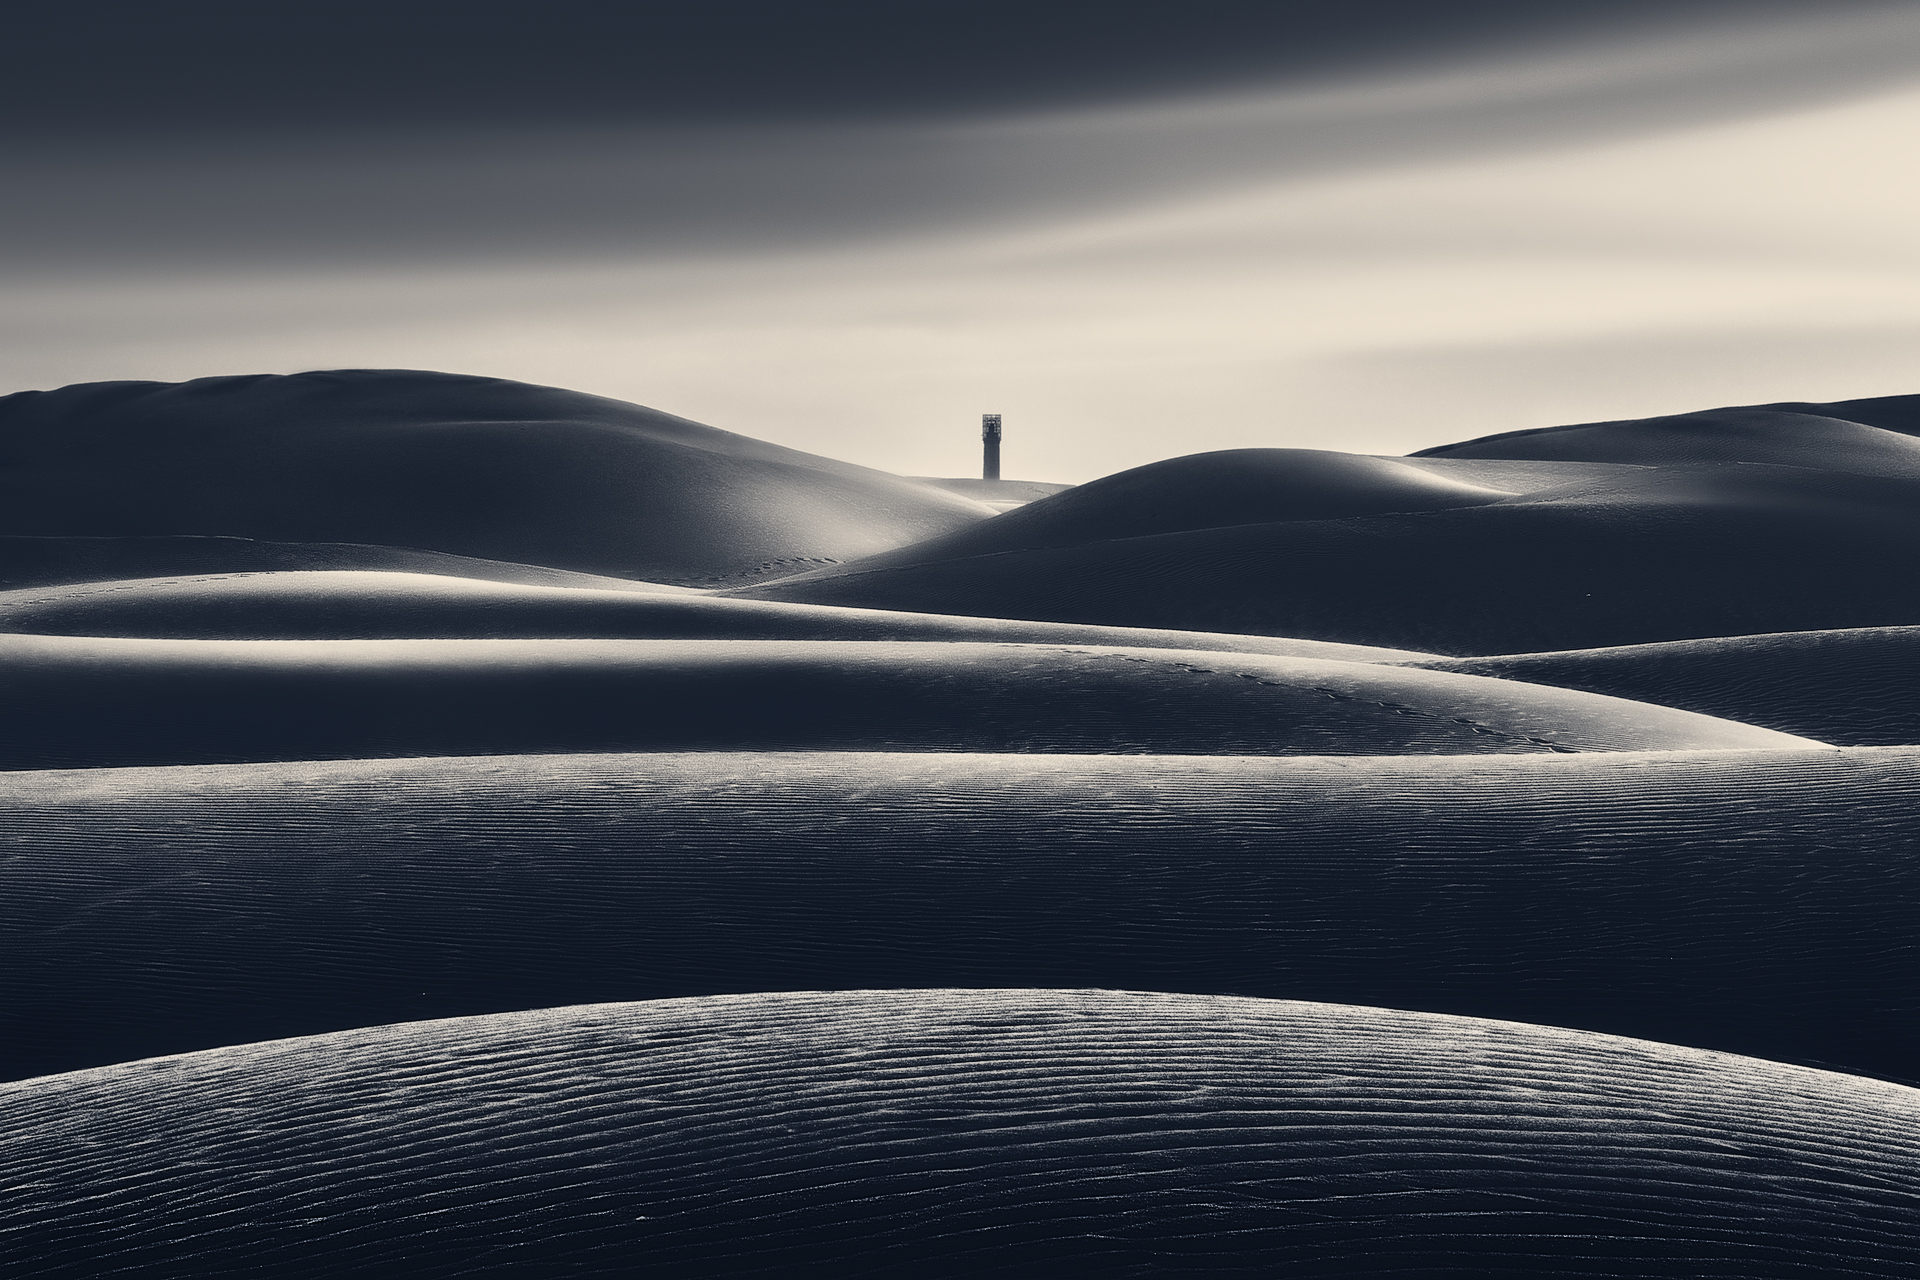 The Lighthouse in the Desert ...